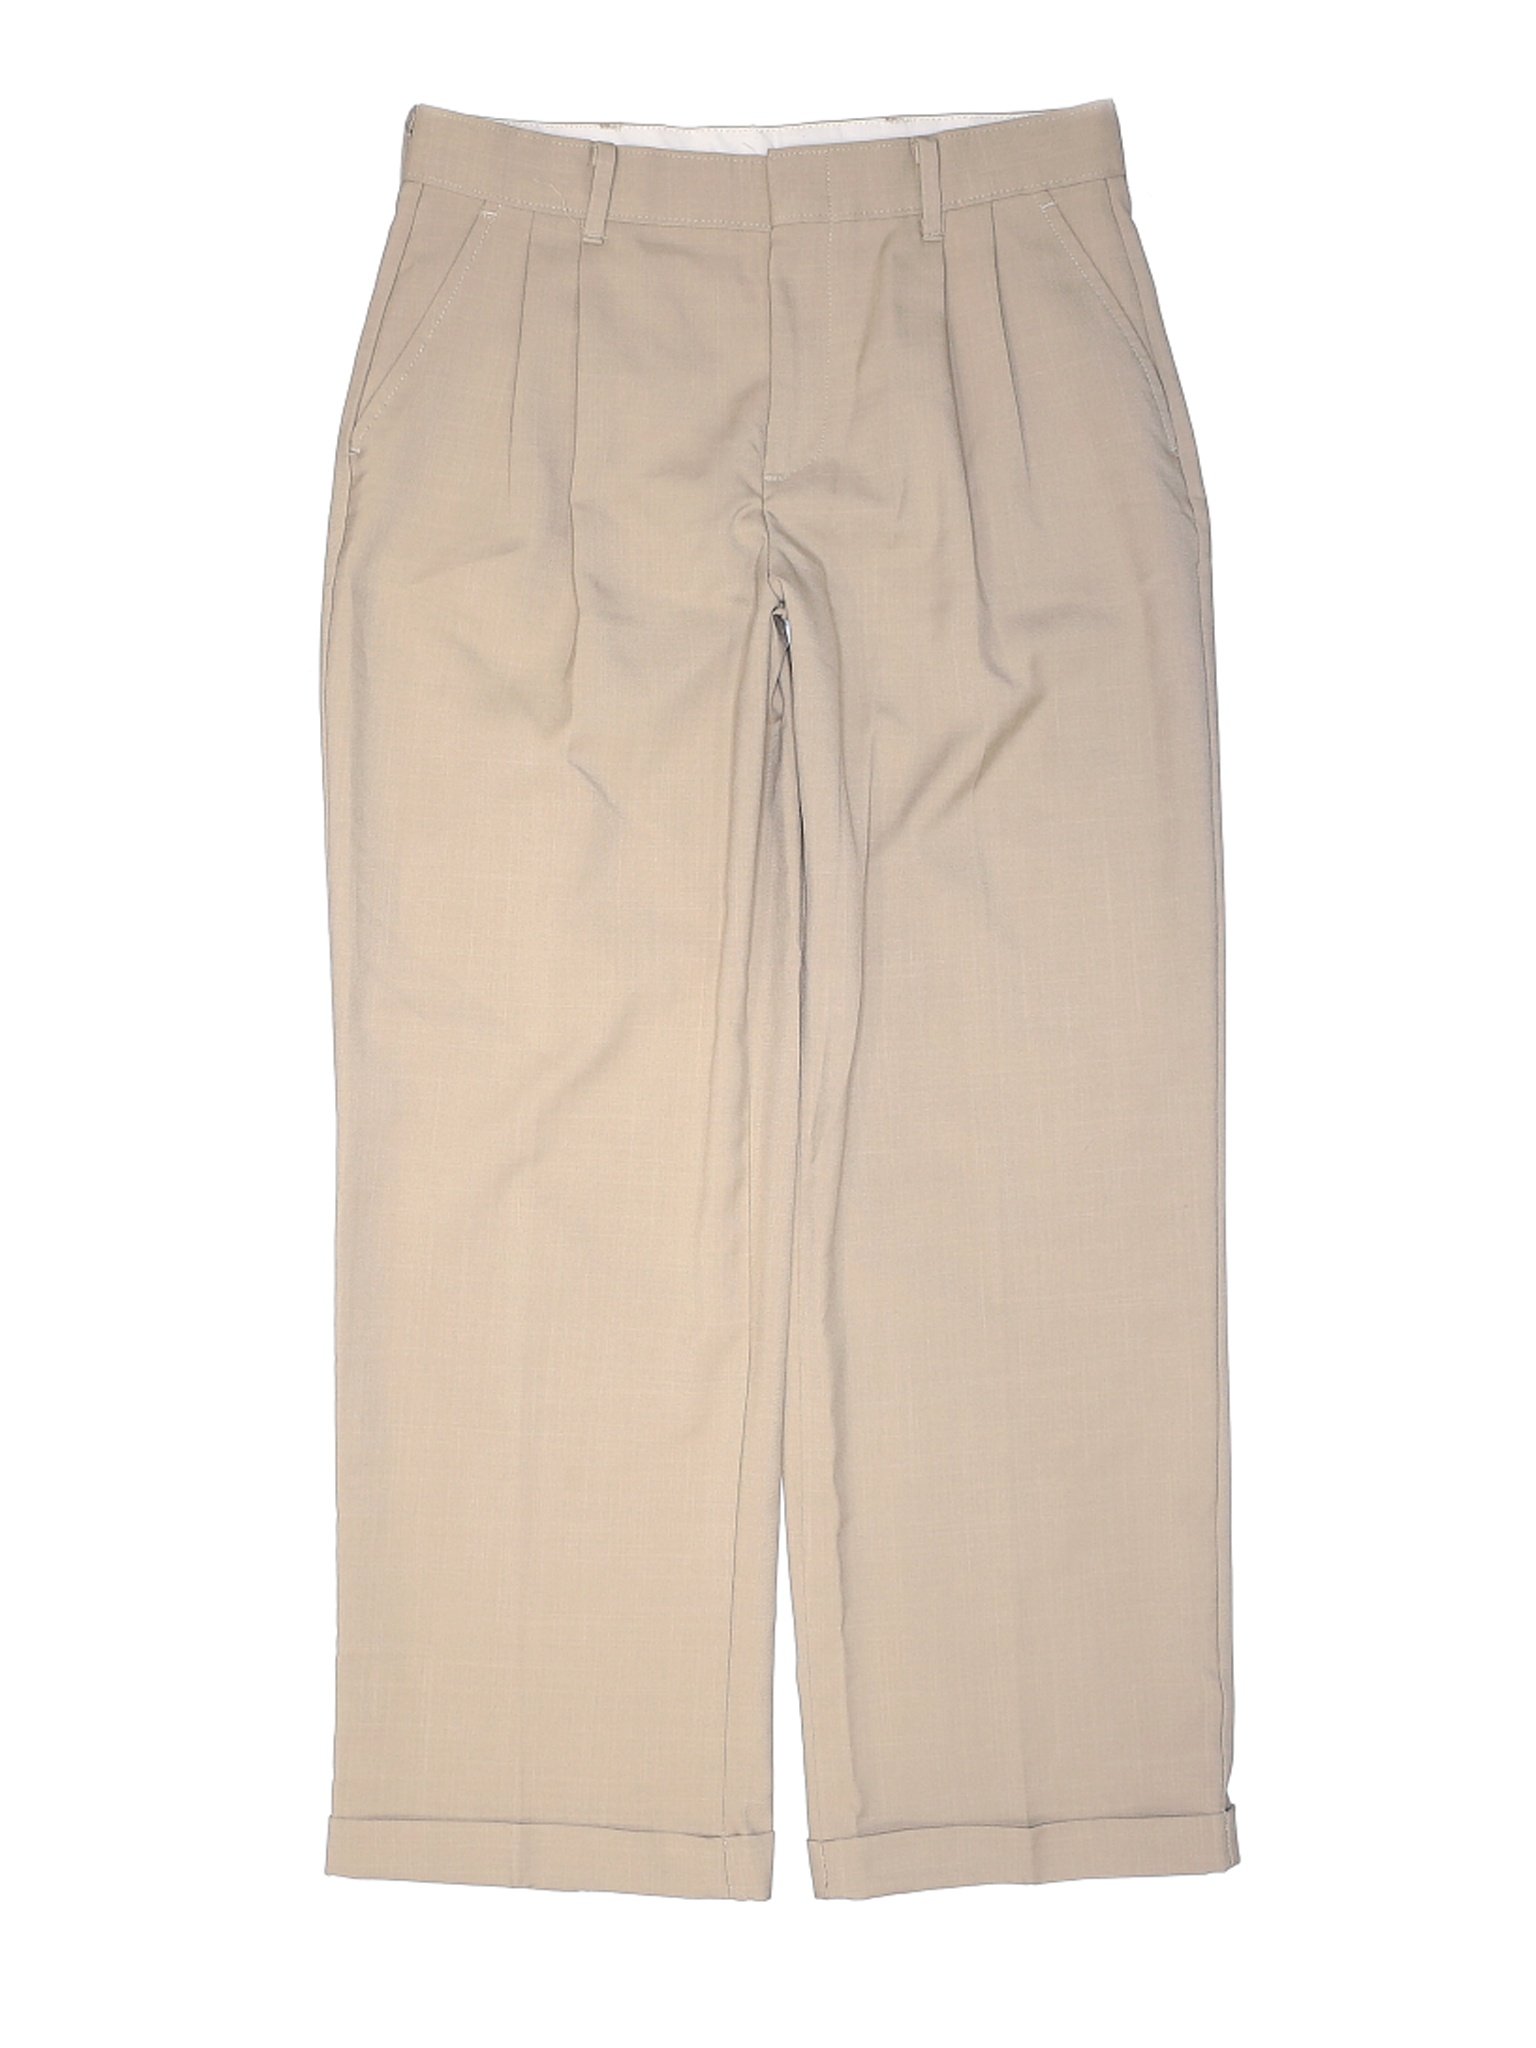 George Boys Brown Dress Pants 14 | eBay